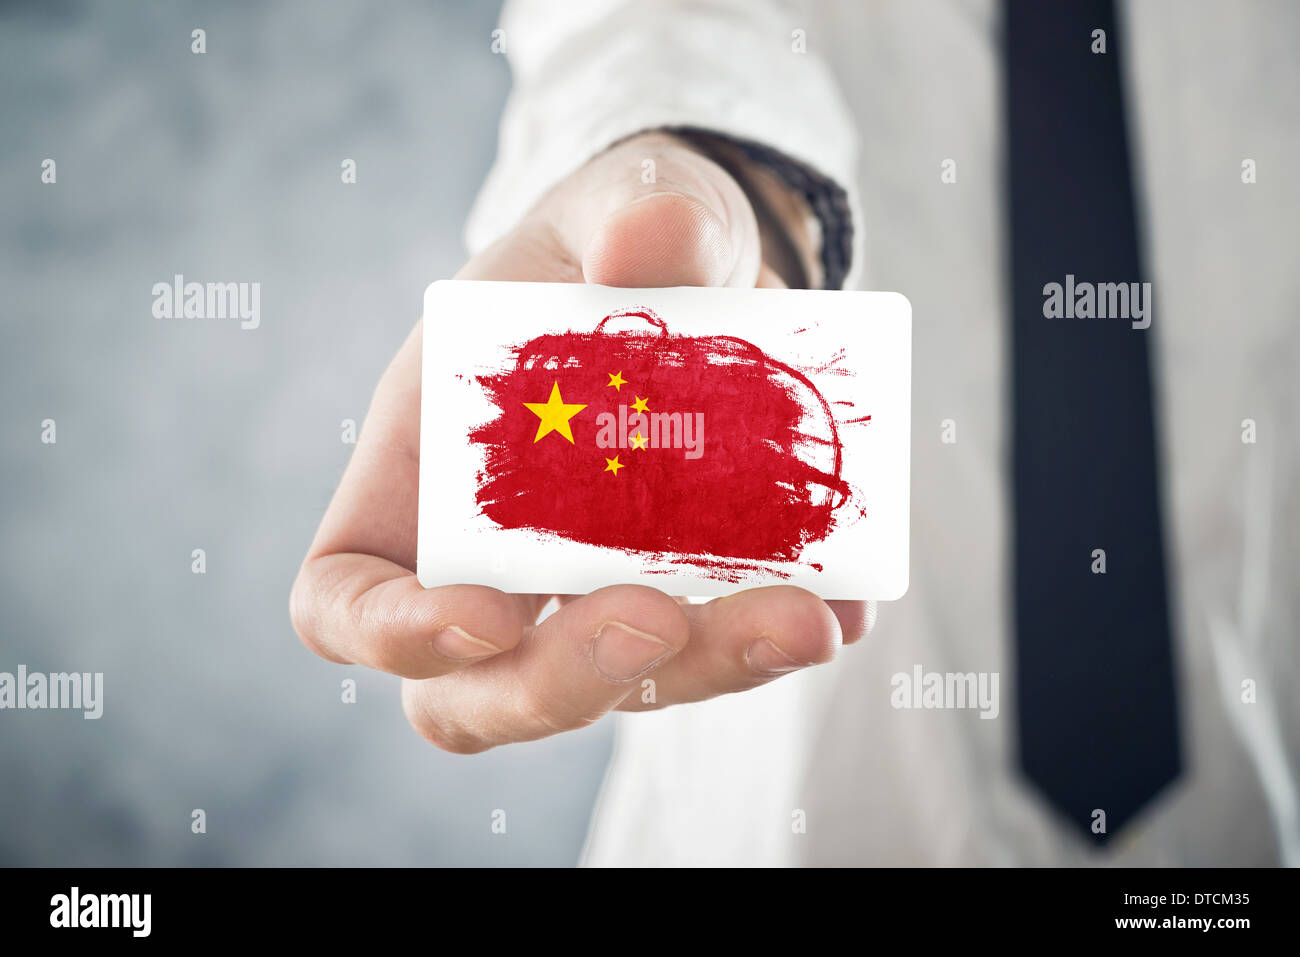 Chinese Businessman holding carte d'affaires avec la Chine Drapeau. La coopération internationale, les investissements, les occasions d'affaires Banque D'Images